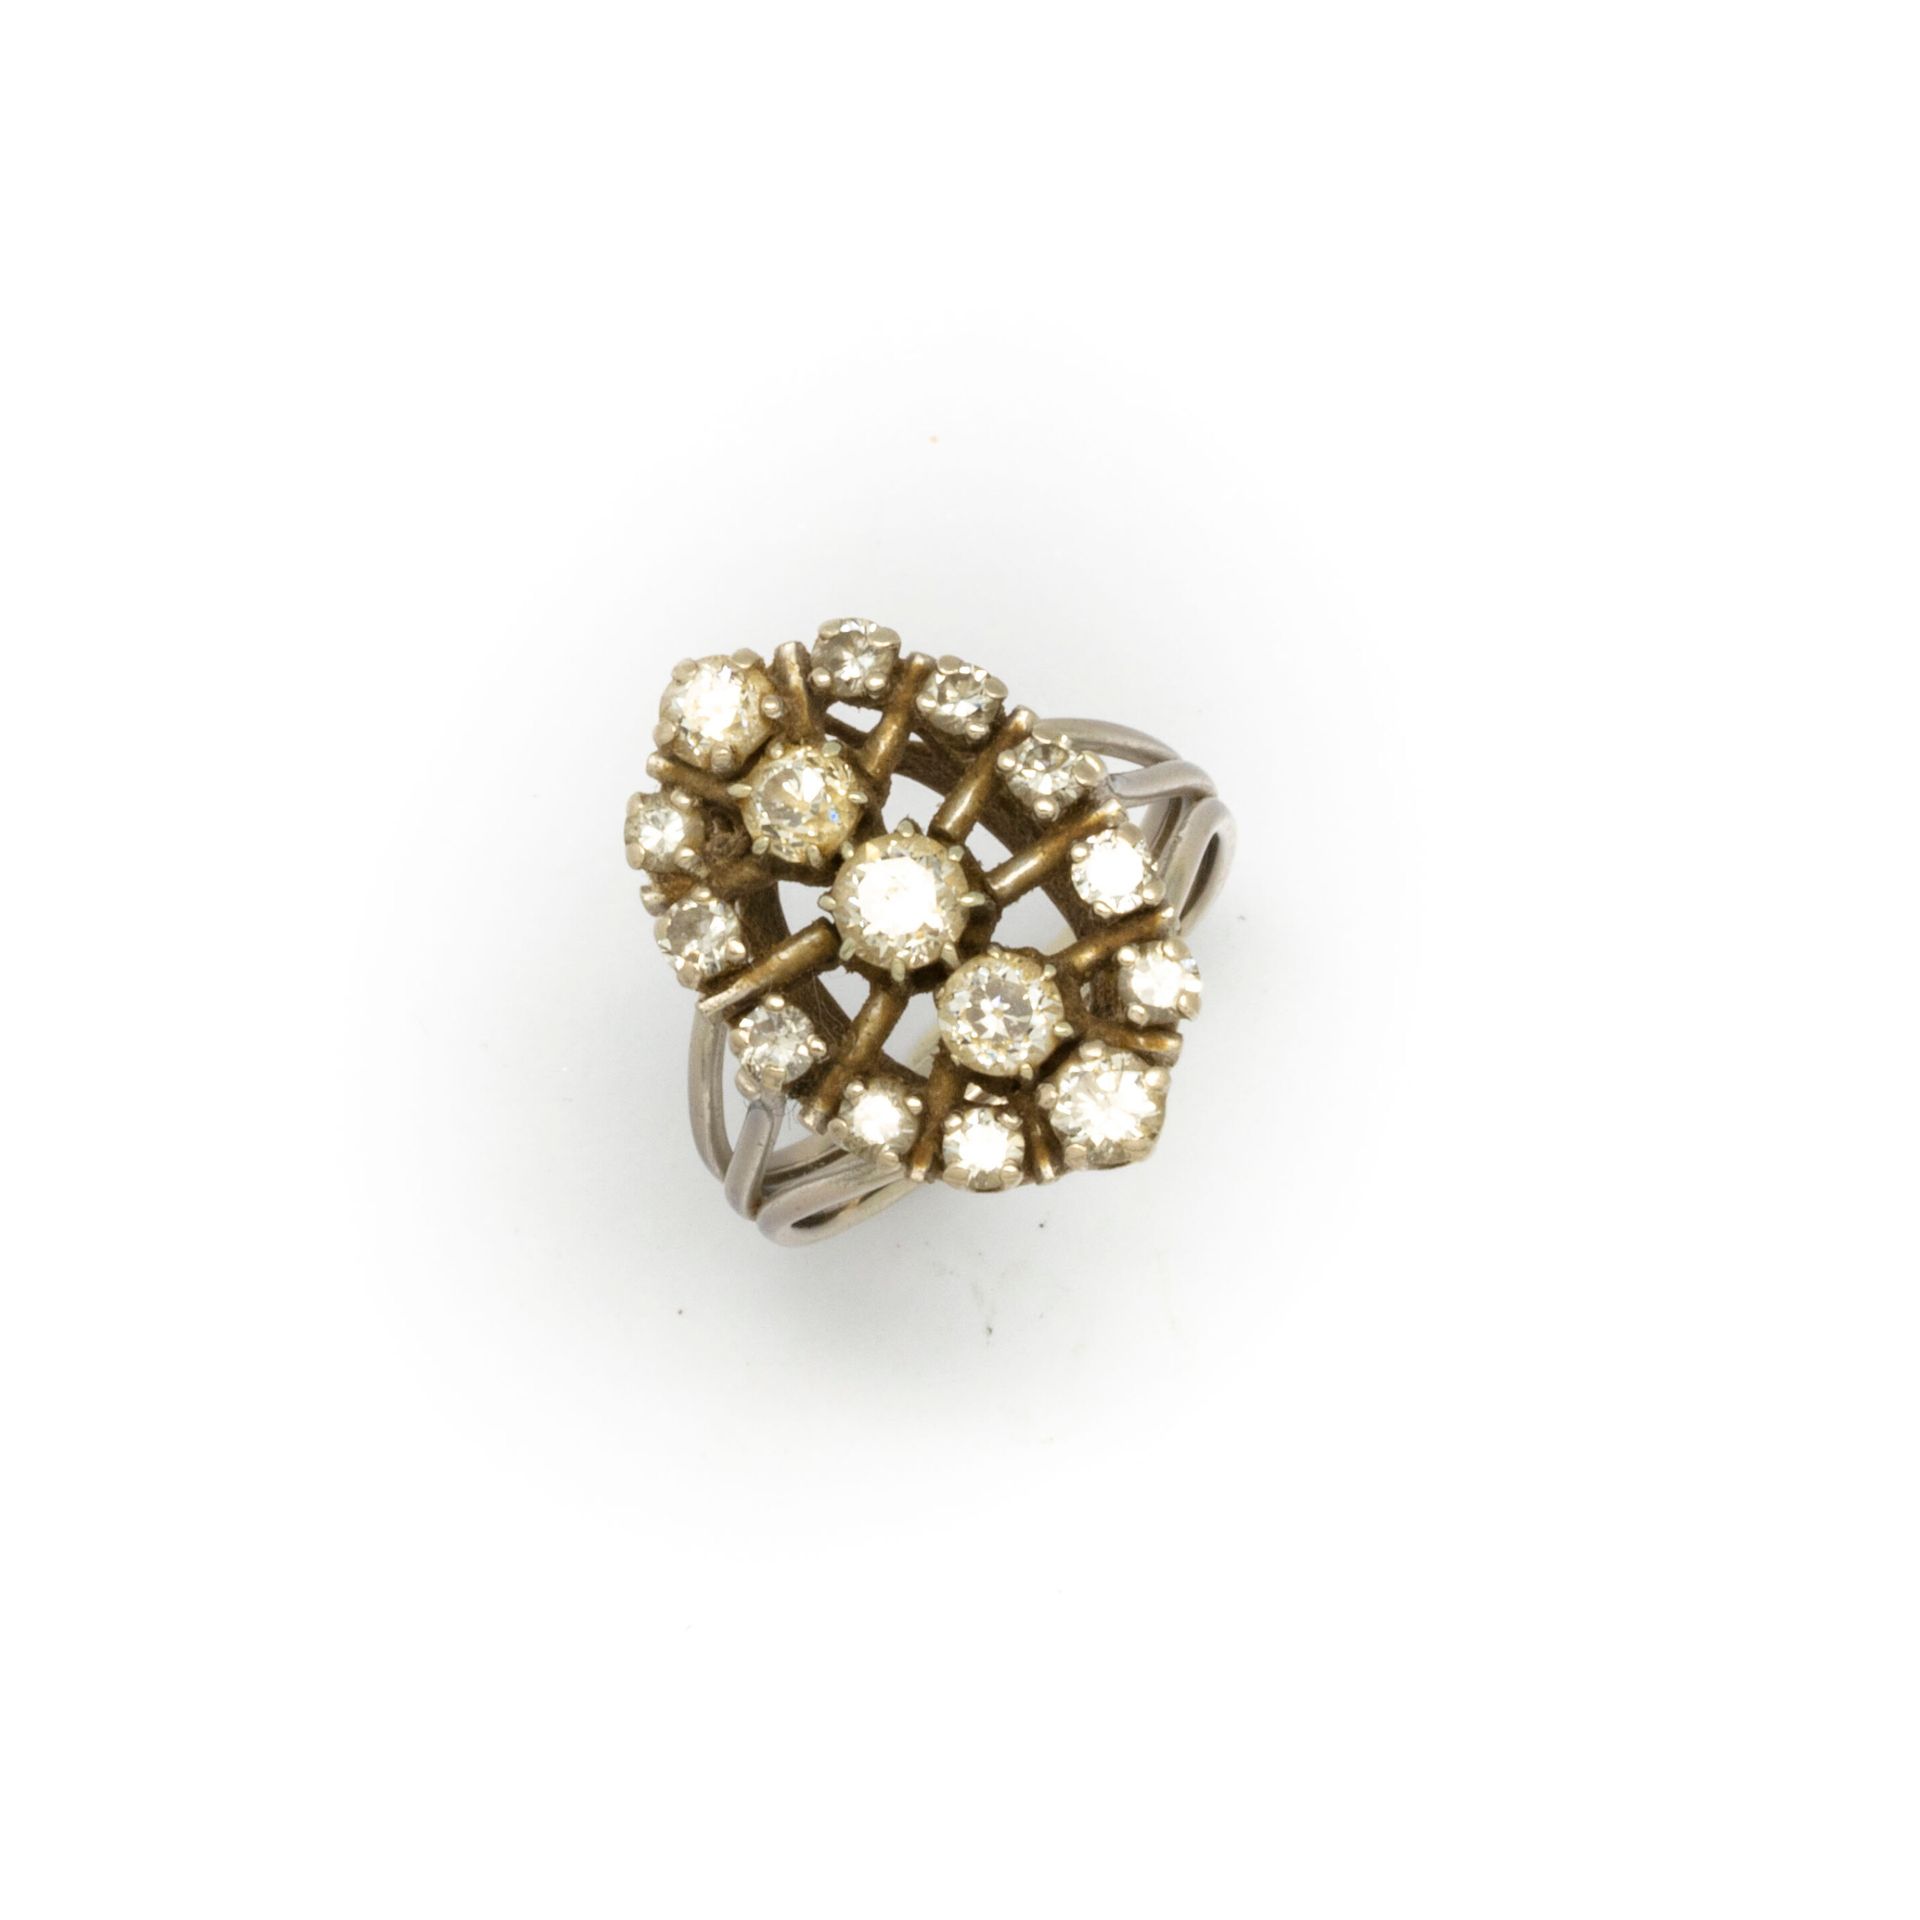 Null Ring aus Weißgold in Navette-Form, mit kleinen Diamanten besetzt.

TDD: 52
&hellip;